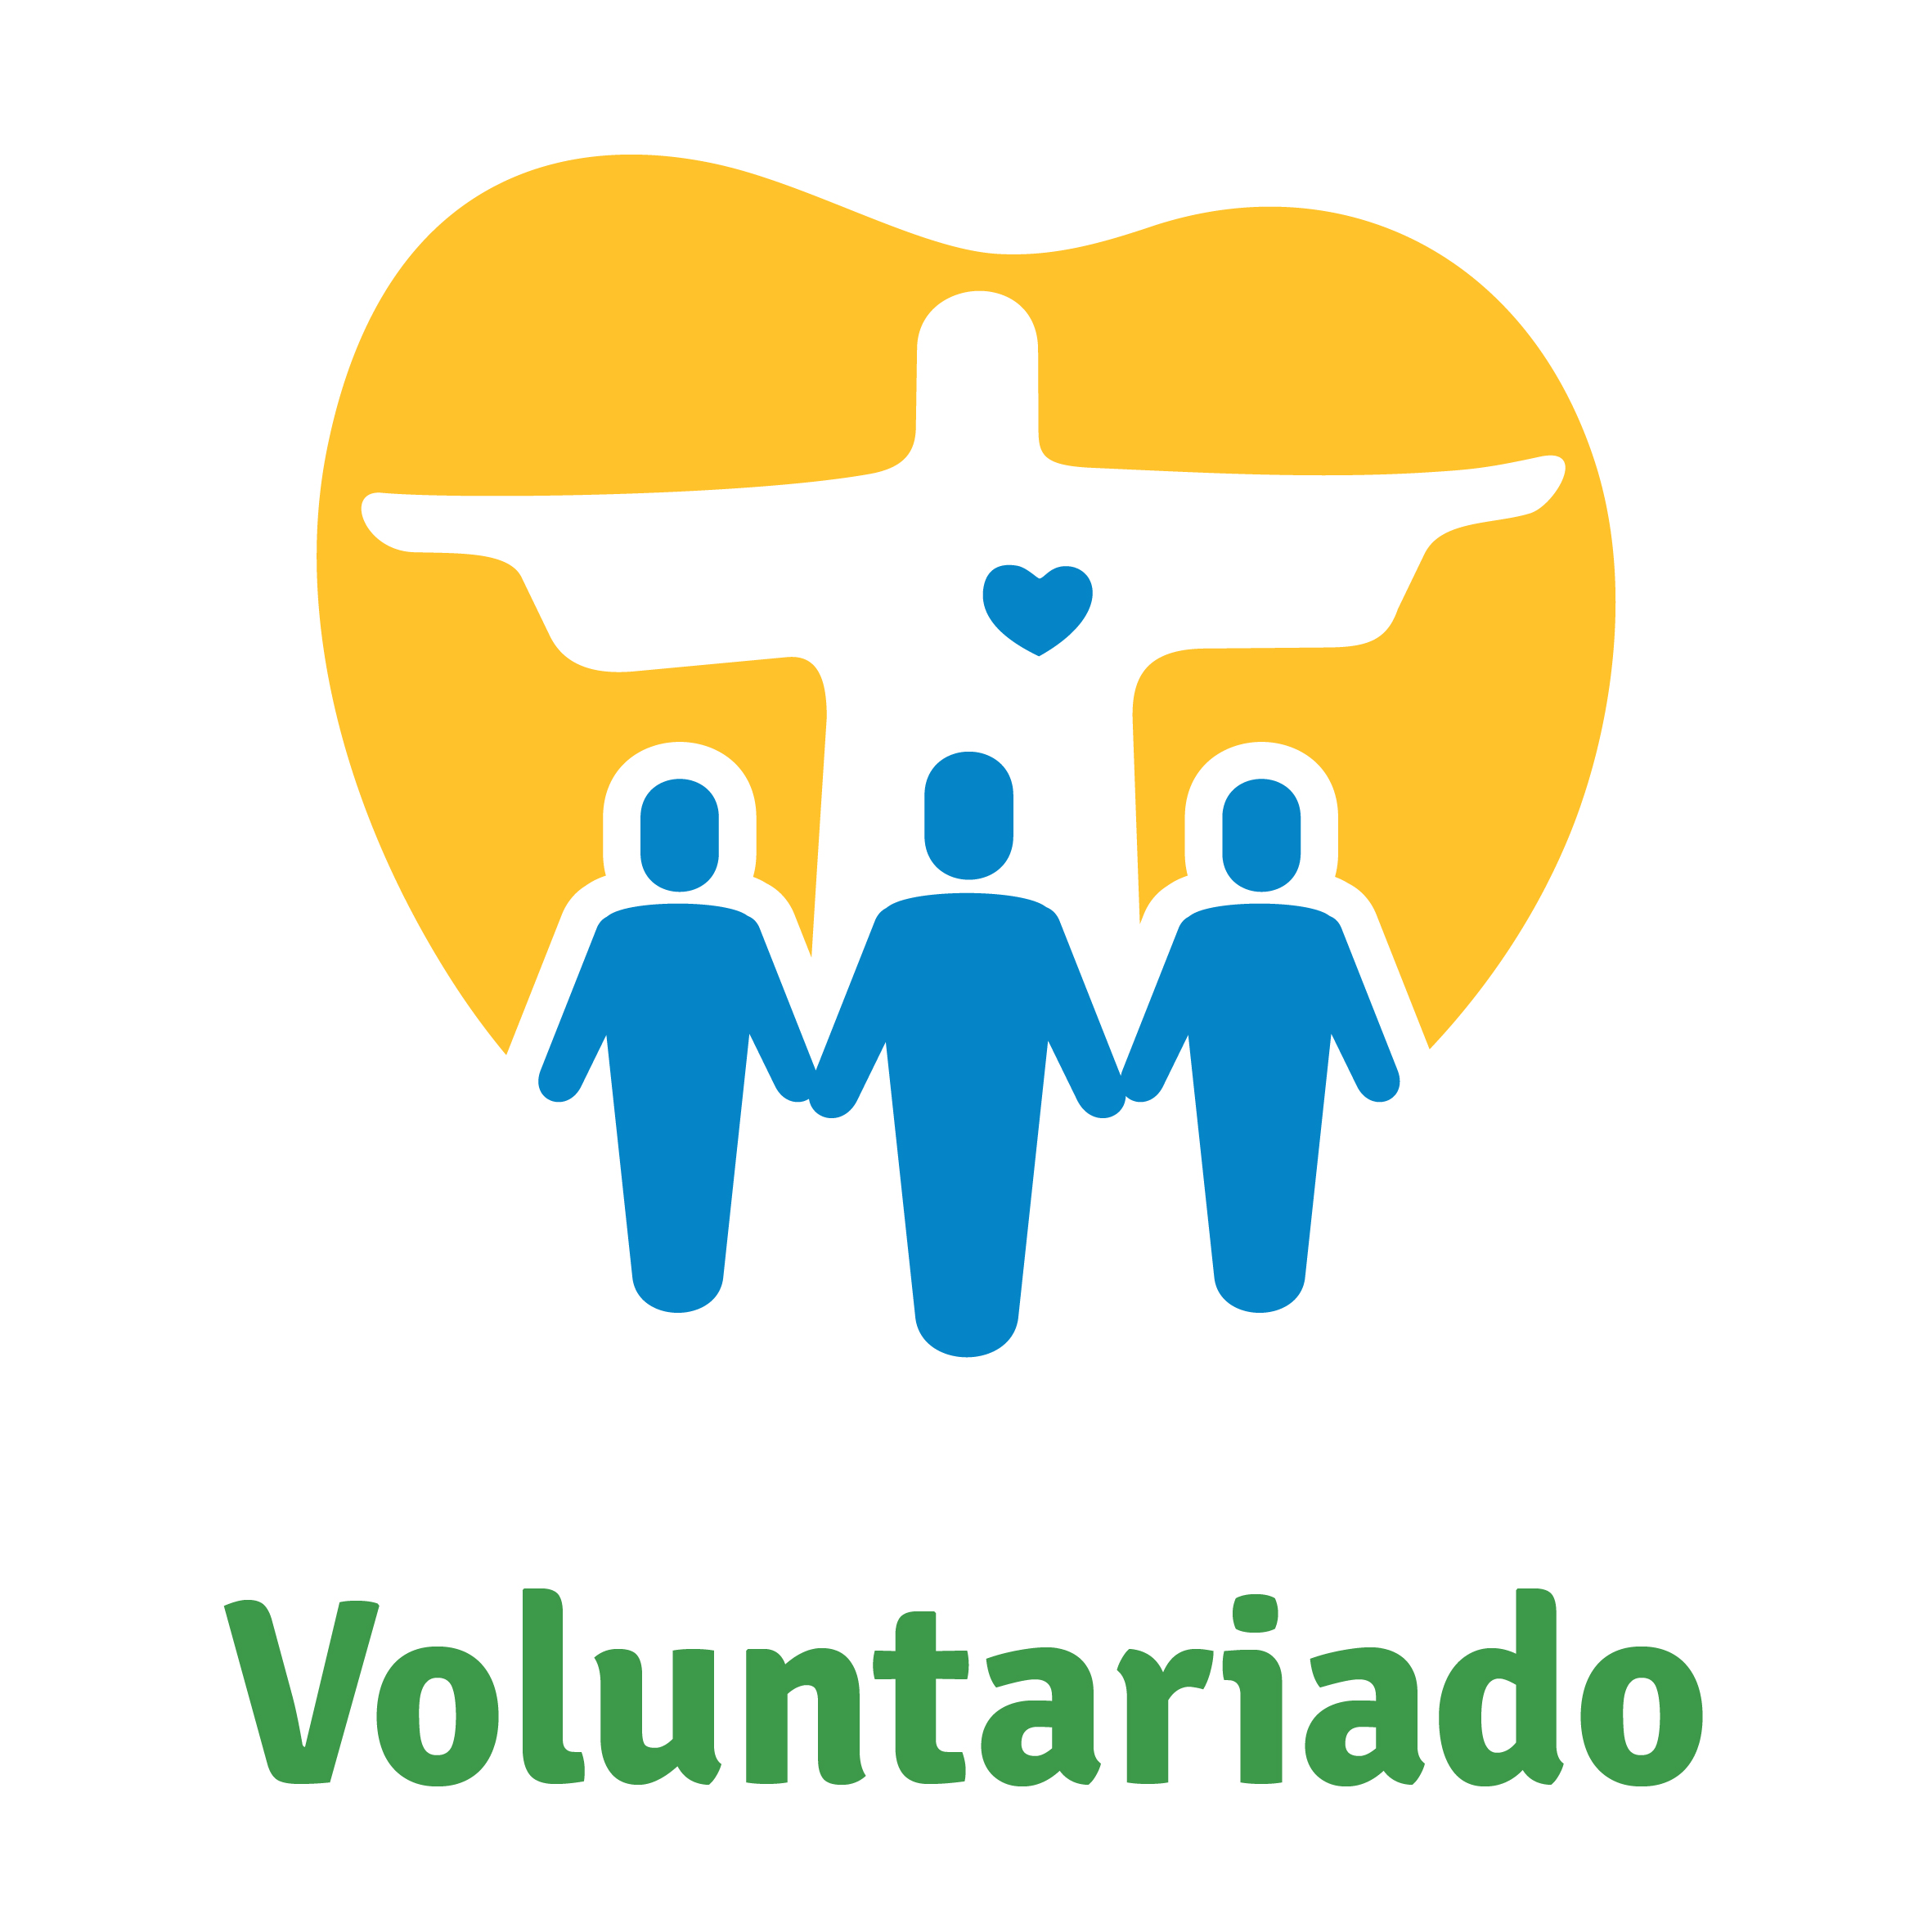 Voluntariado -  JMJ Rio2013